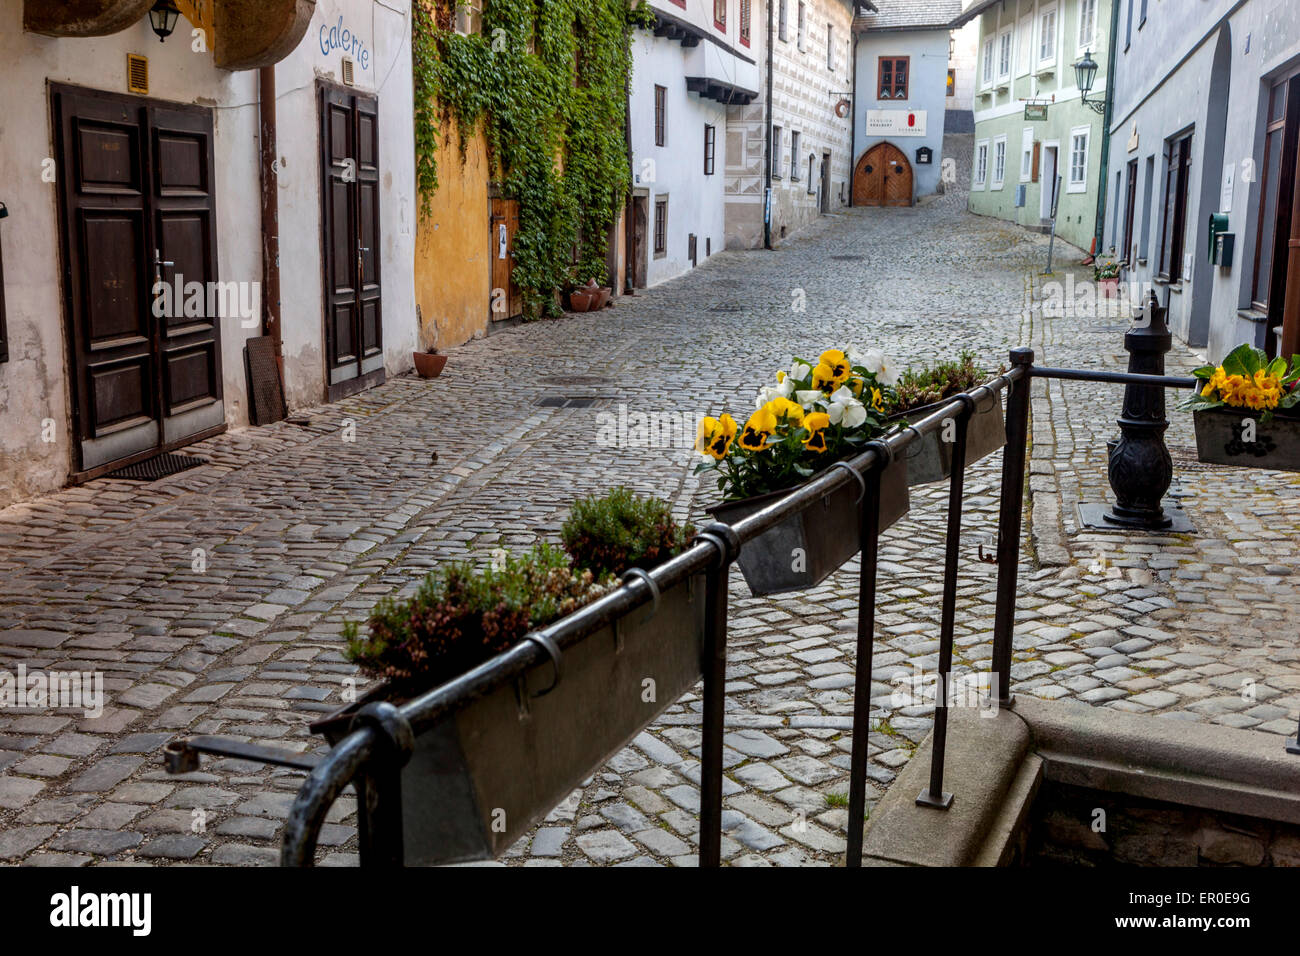 La vieille ville historique de Cesky Krumlov, Bohême, République tchèque, l'UNESCO, scène de rue Banque D'Images